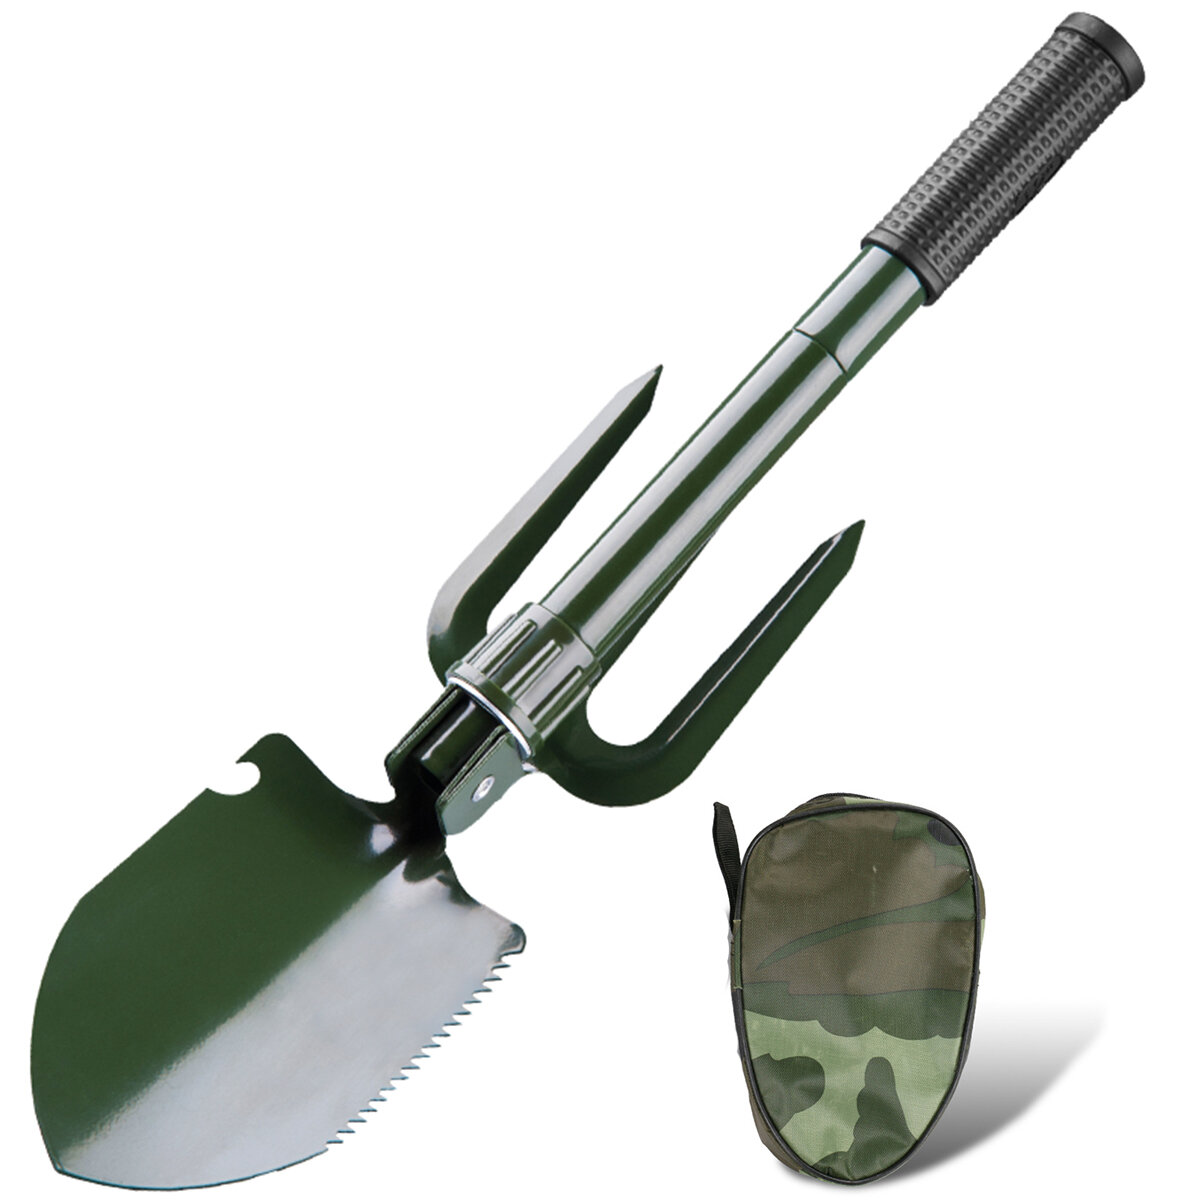 Pala pieghevole tattica 5 in 1 in acciaio inossidabile militare, strumenti di sopravvivenza tattici compatti per emergenze all'aperto.